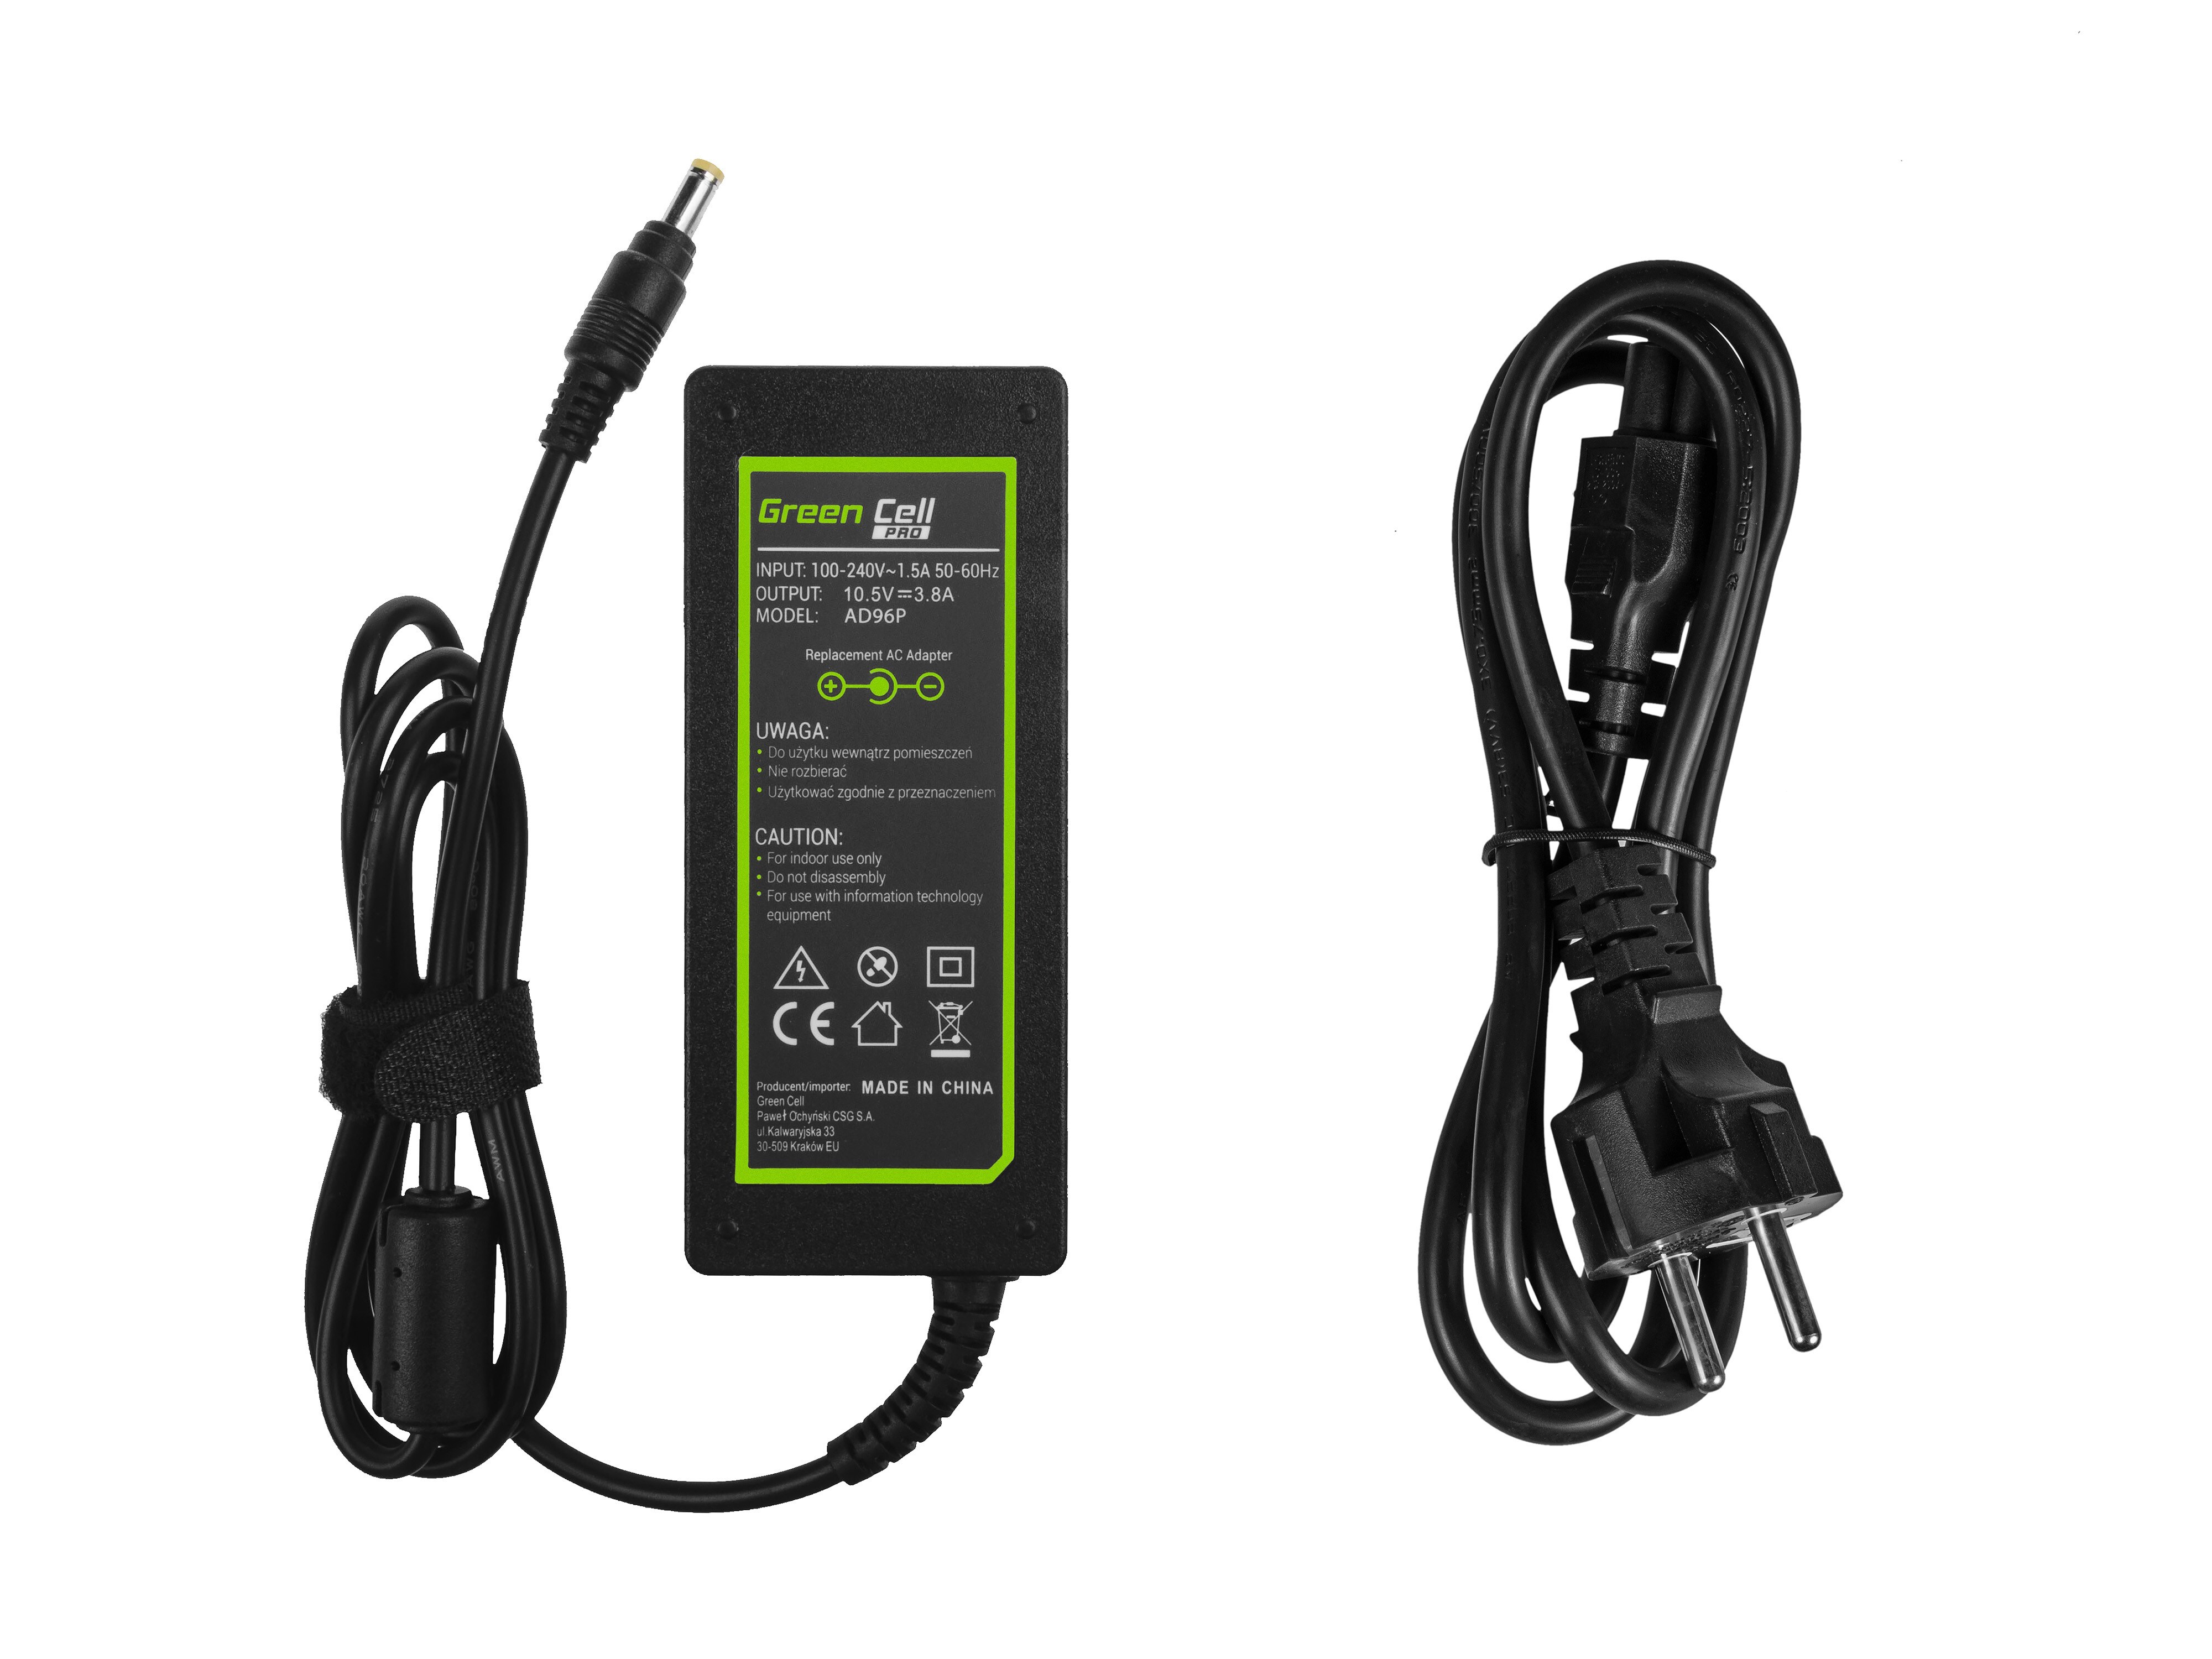 Green Cell PRO laturi / AC Adapteri Sony Vaio S13 SVS13 Pro 11 -10.5V 3.8A 40W